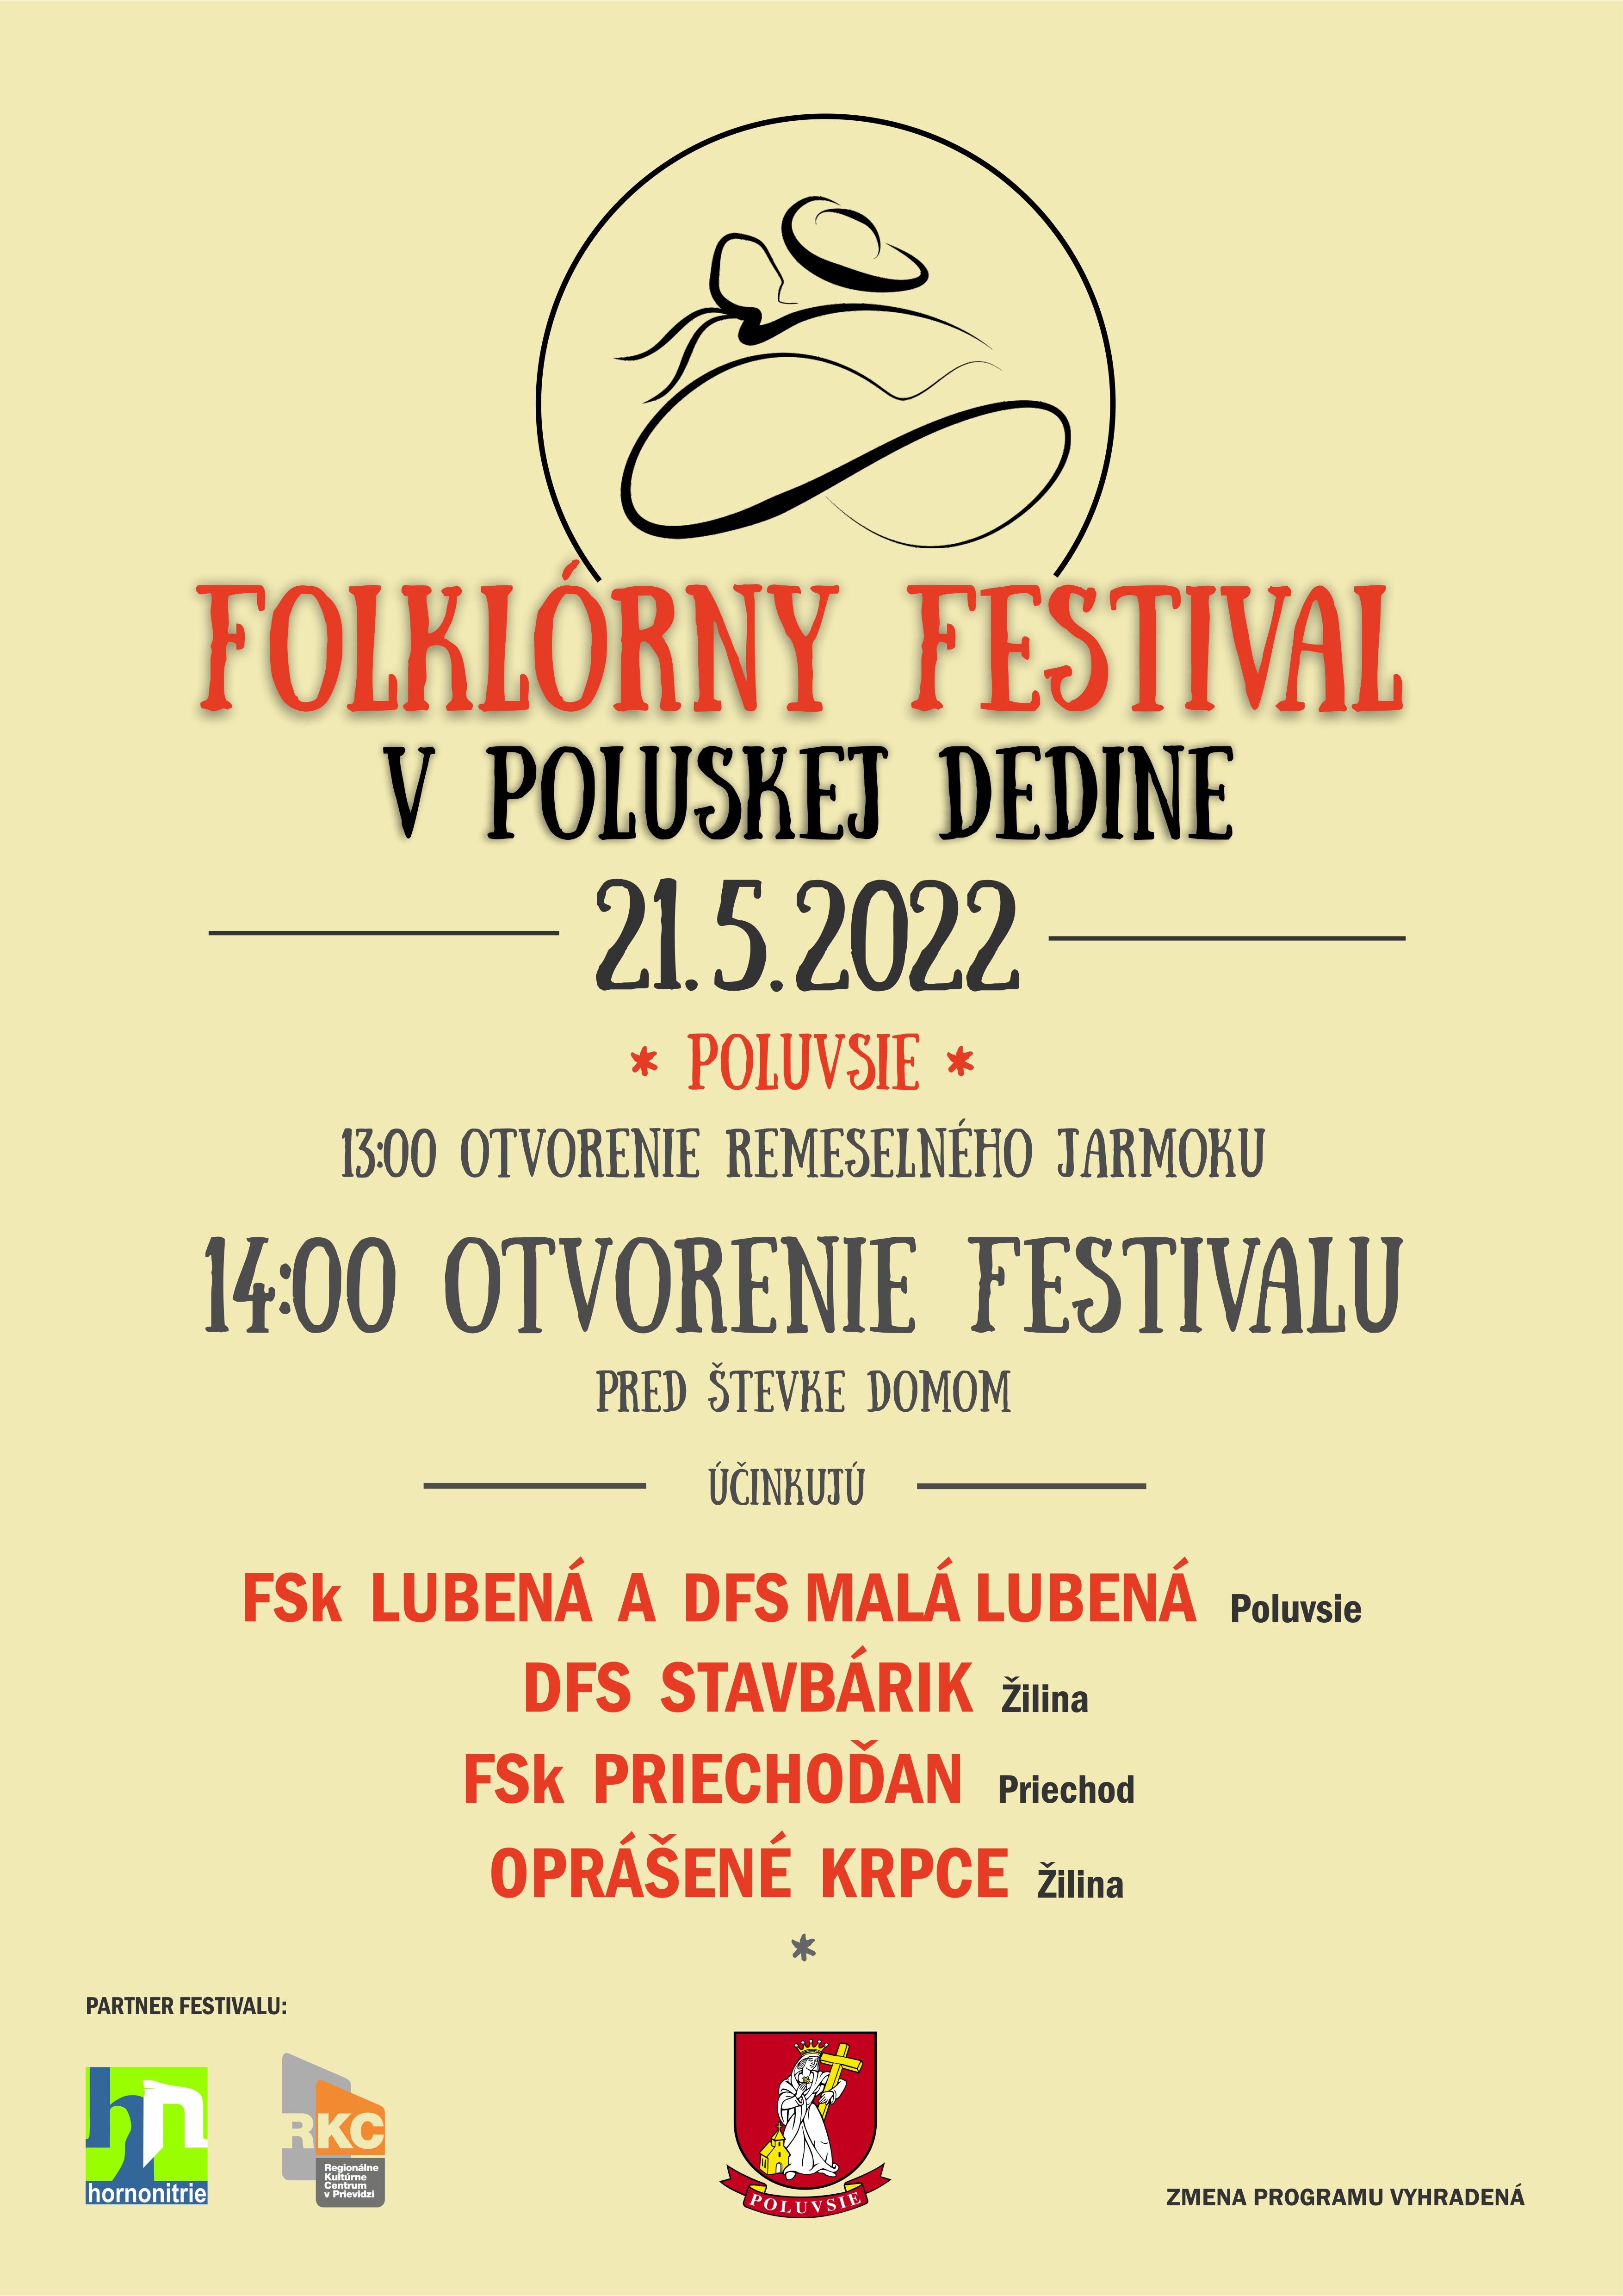 Folklórny festival V poluskej dedine